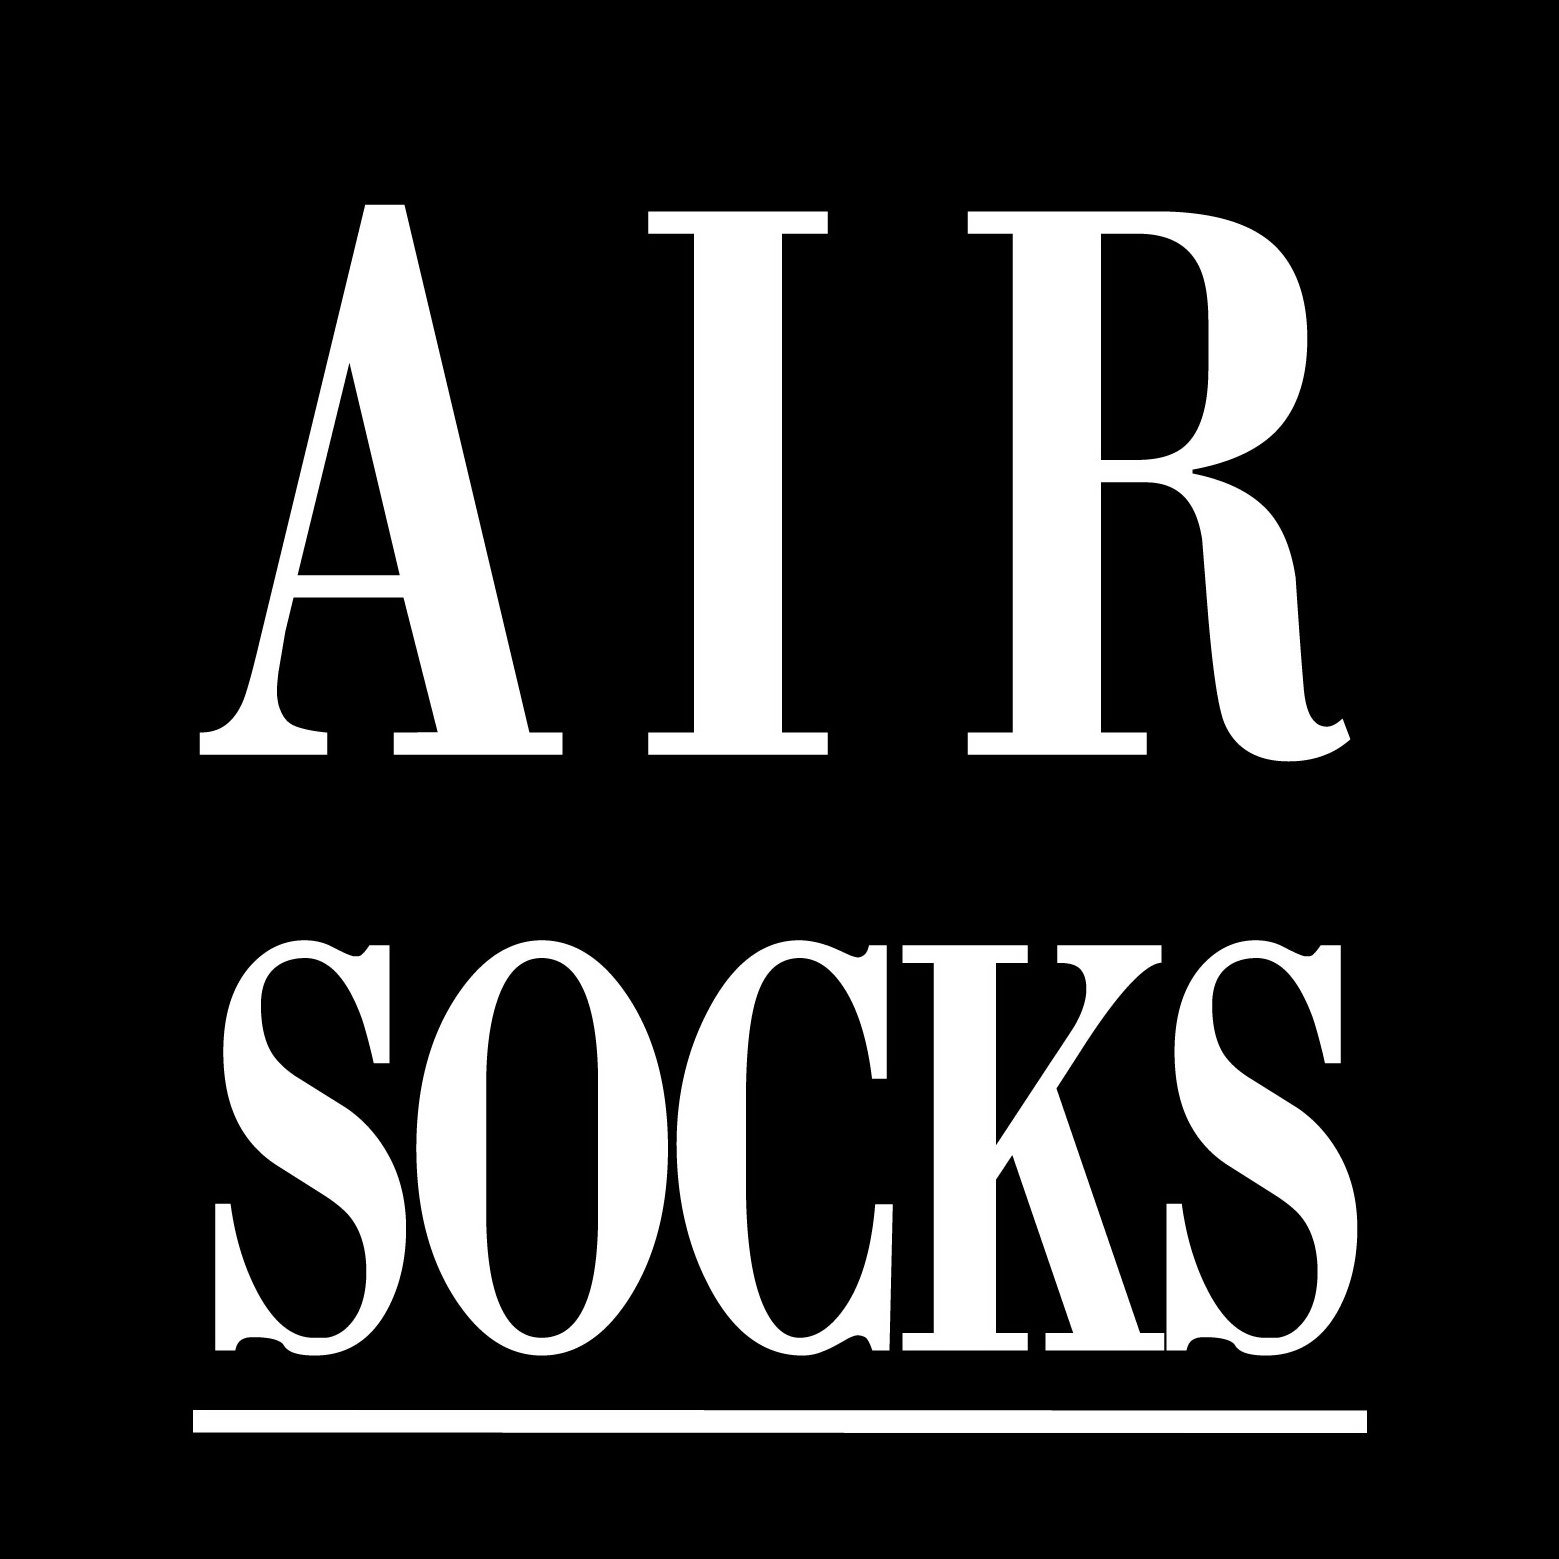 AIR SOCKS